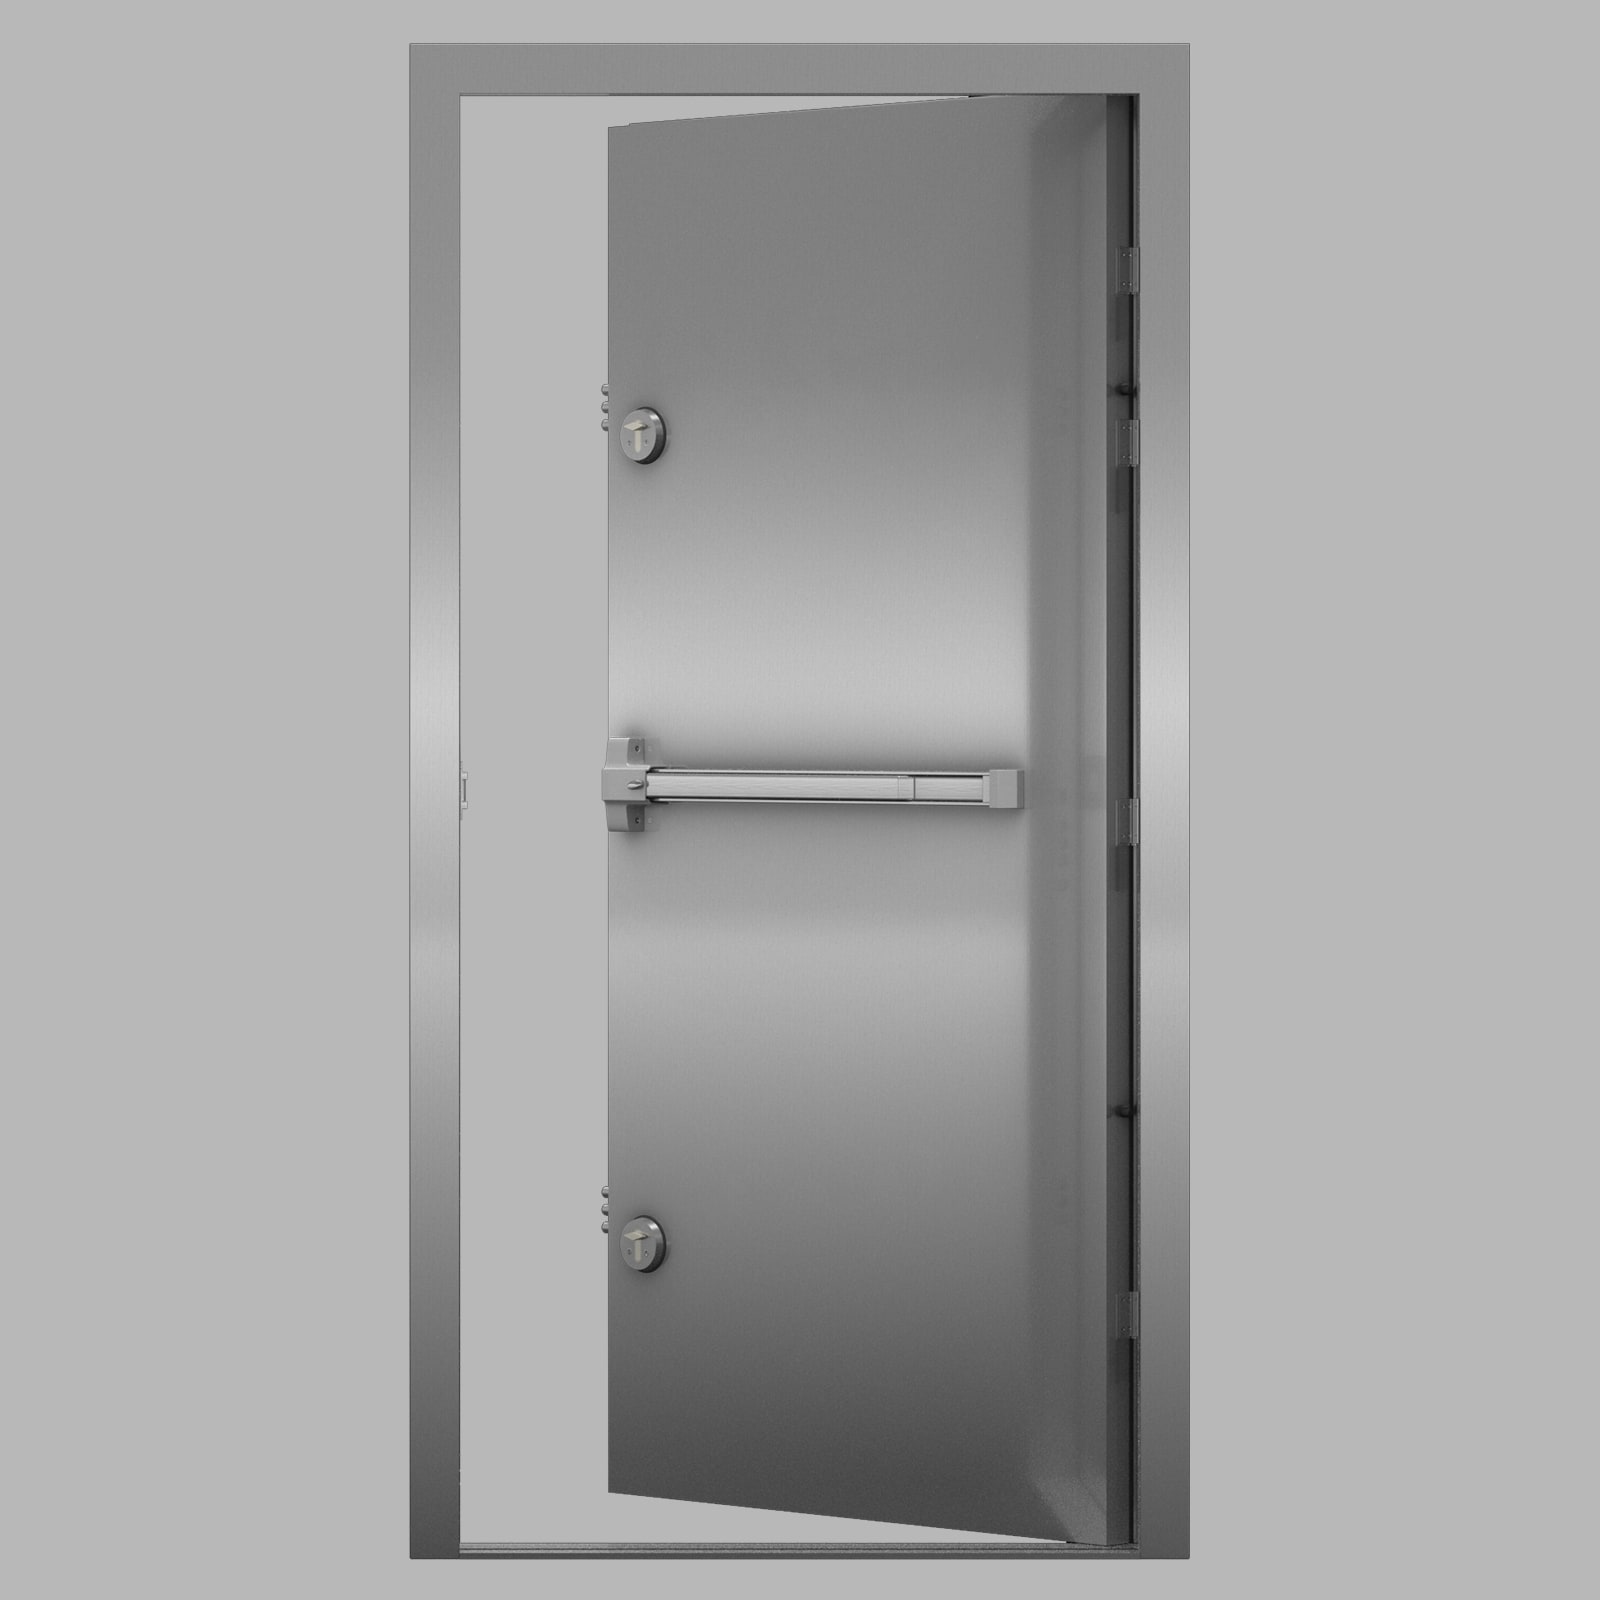 Lathams Security Doorsets Ltd Oldbury 01384 220050